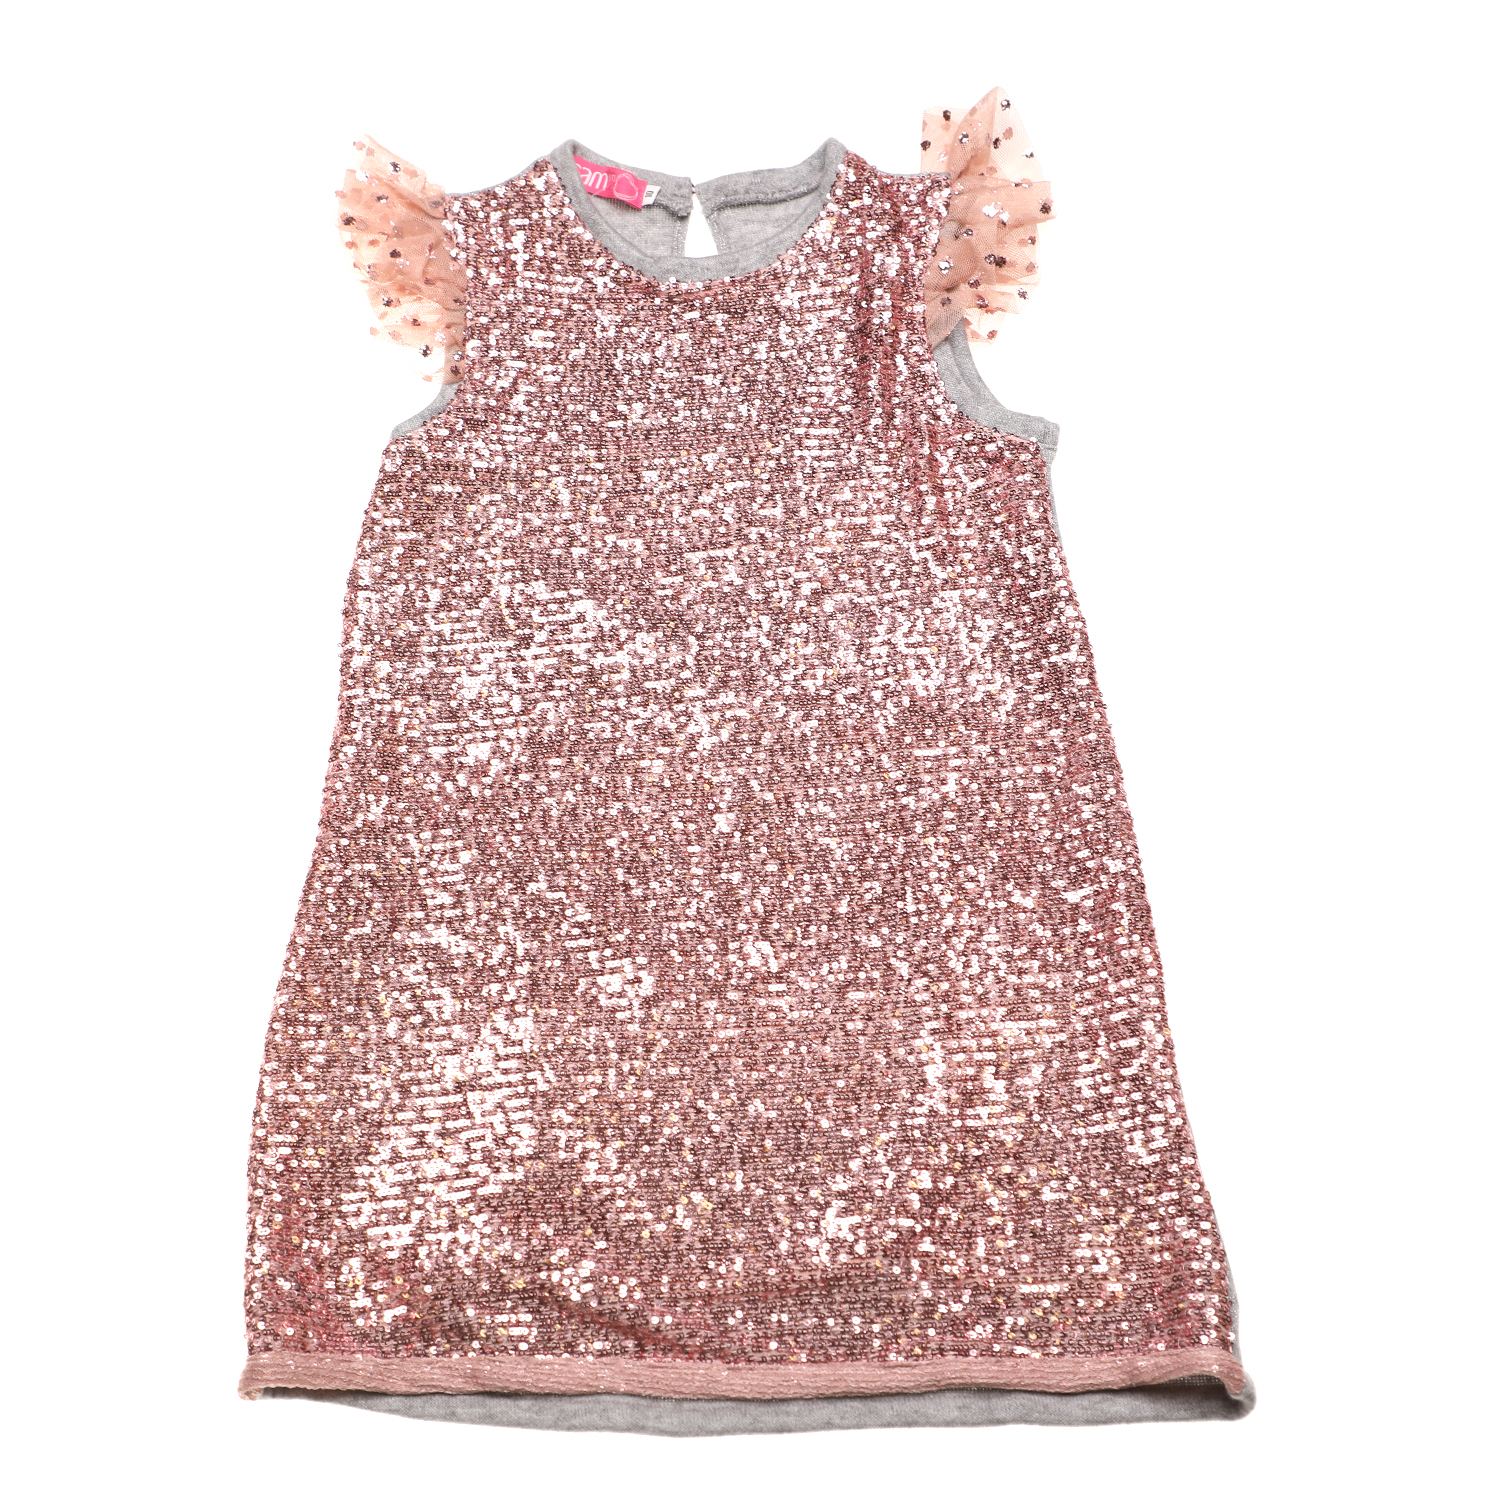 Παιδικά/Girls/Ρούχα/Φορέματα Κοντομάνικα-Αμάνικα SAM 0-13 - Παιδικό φόρεμα με παγιέτες SAM 0-13 γκρι ροζ